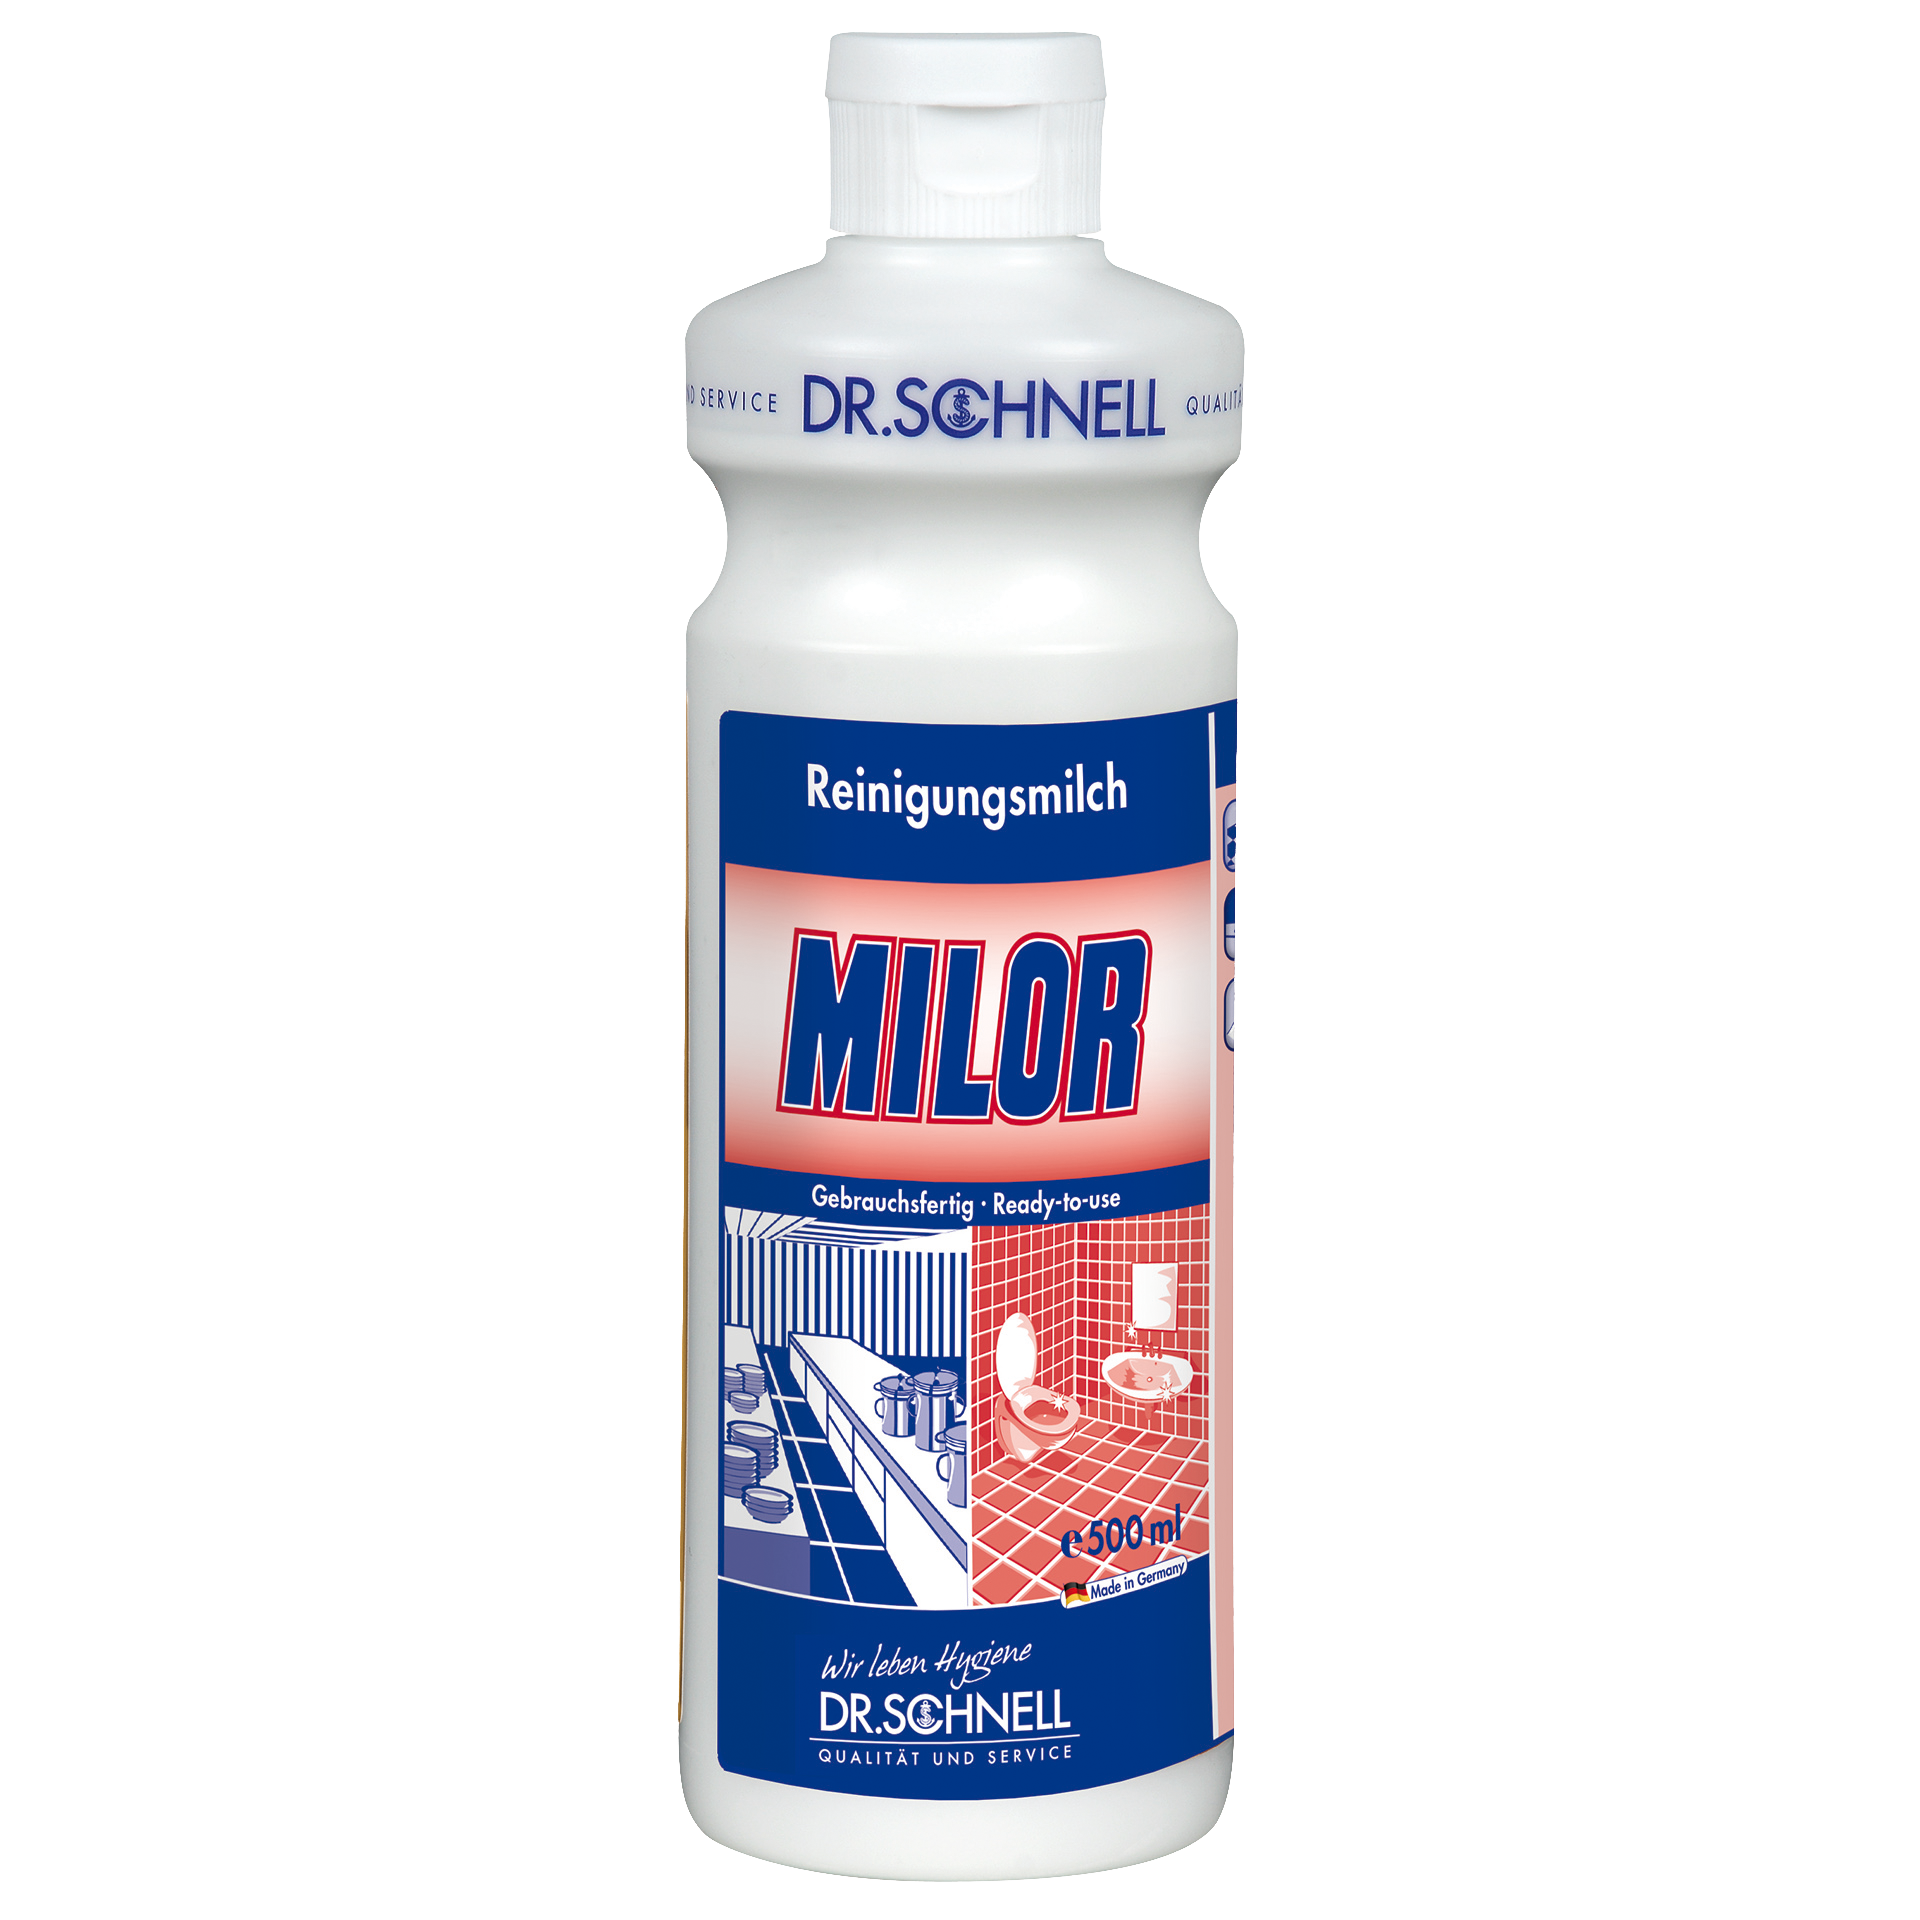 Dr. Schnell MILOR, sanfte Reinigungsmilch, 500 ml Flasche